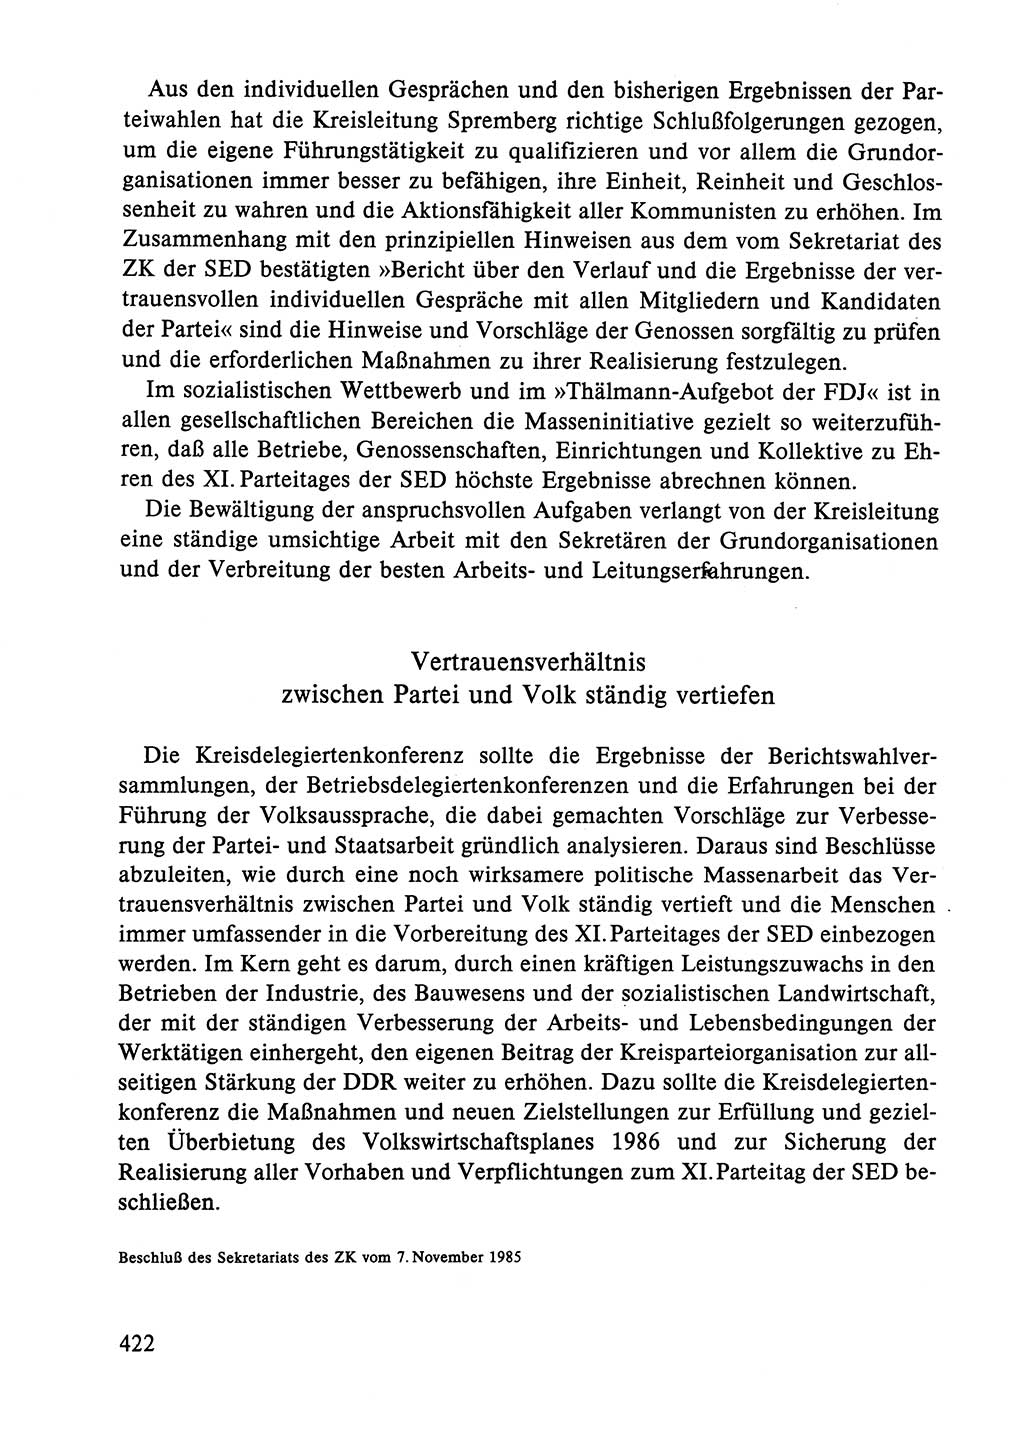 Dokumente der Sozialistischen Einheitspartei Deutschlands (SED) [Deutsche Demokratische Republik (DDR)] 1984-1985, Seite 422 (Dok. SED DDR 1984-1985, S. 422)